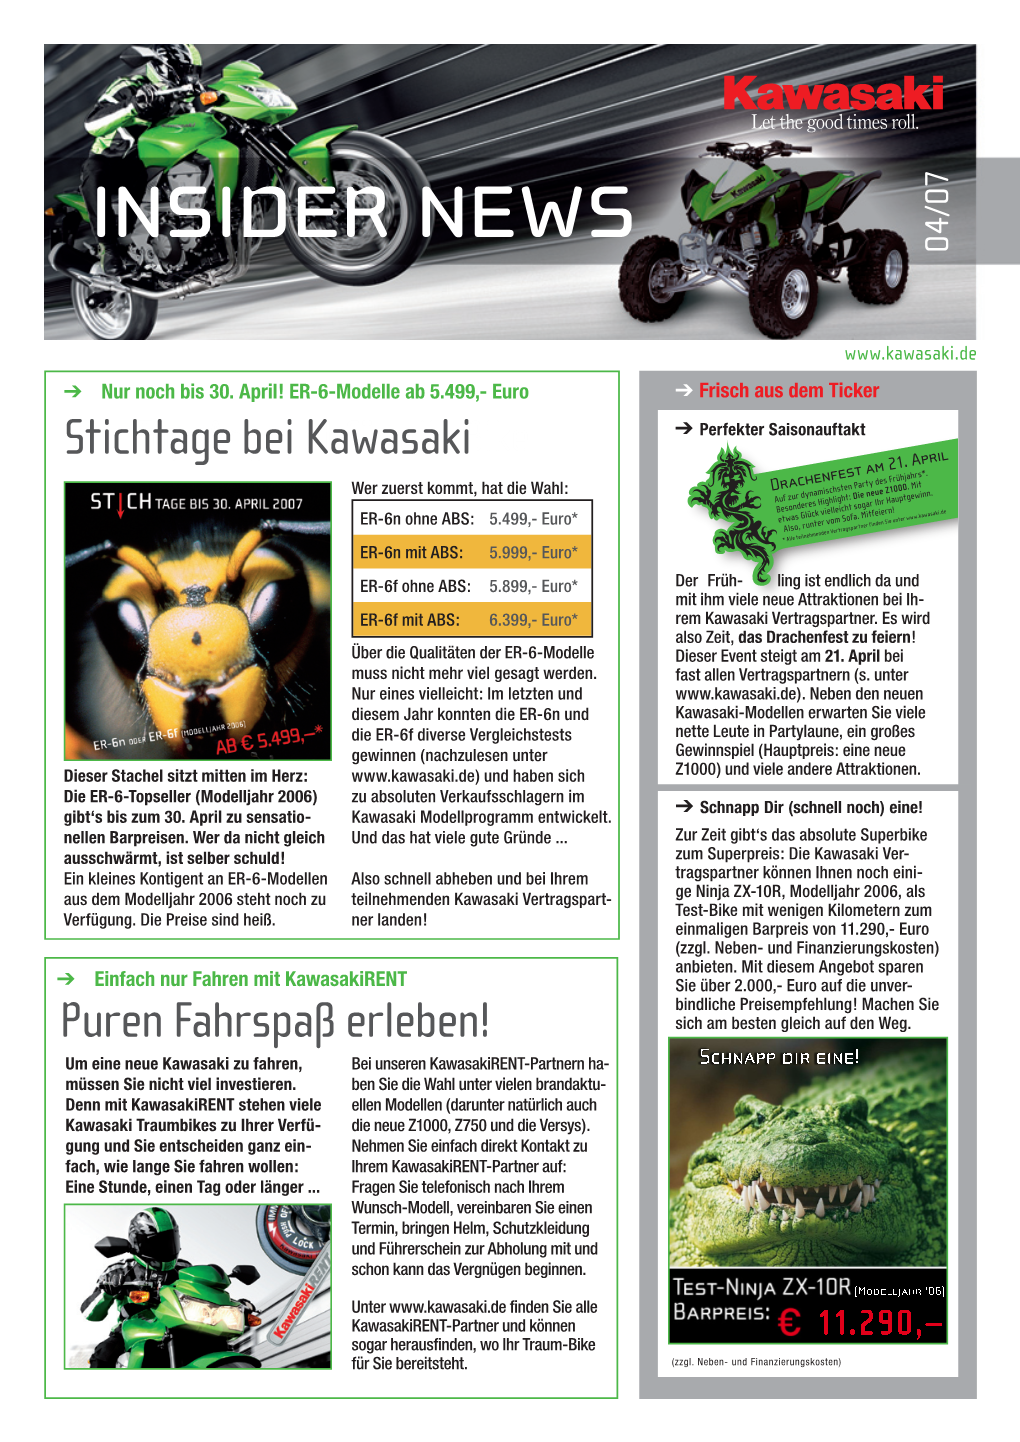 Kawasaki Insider News